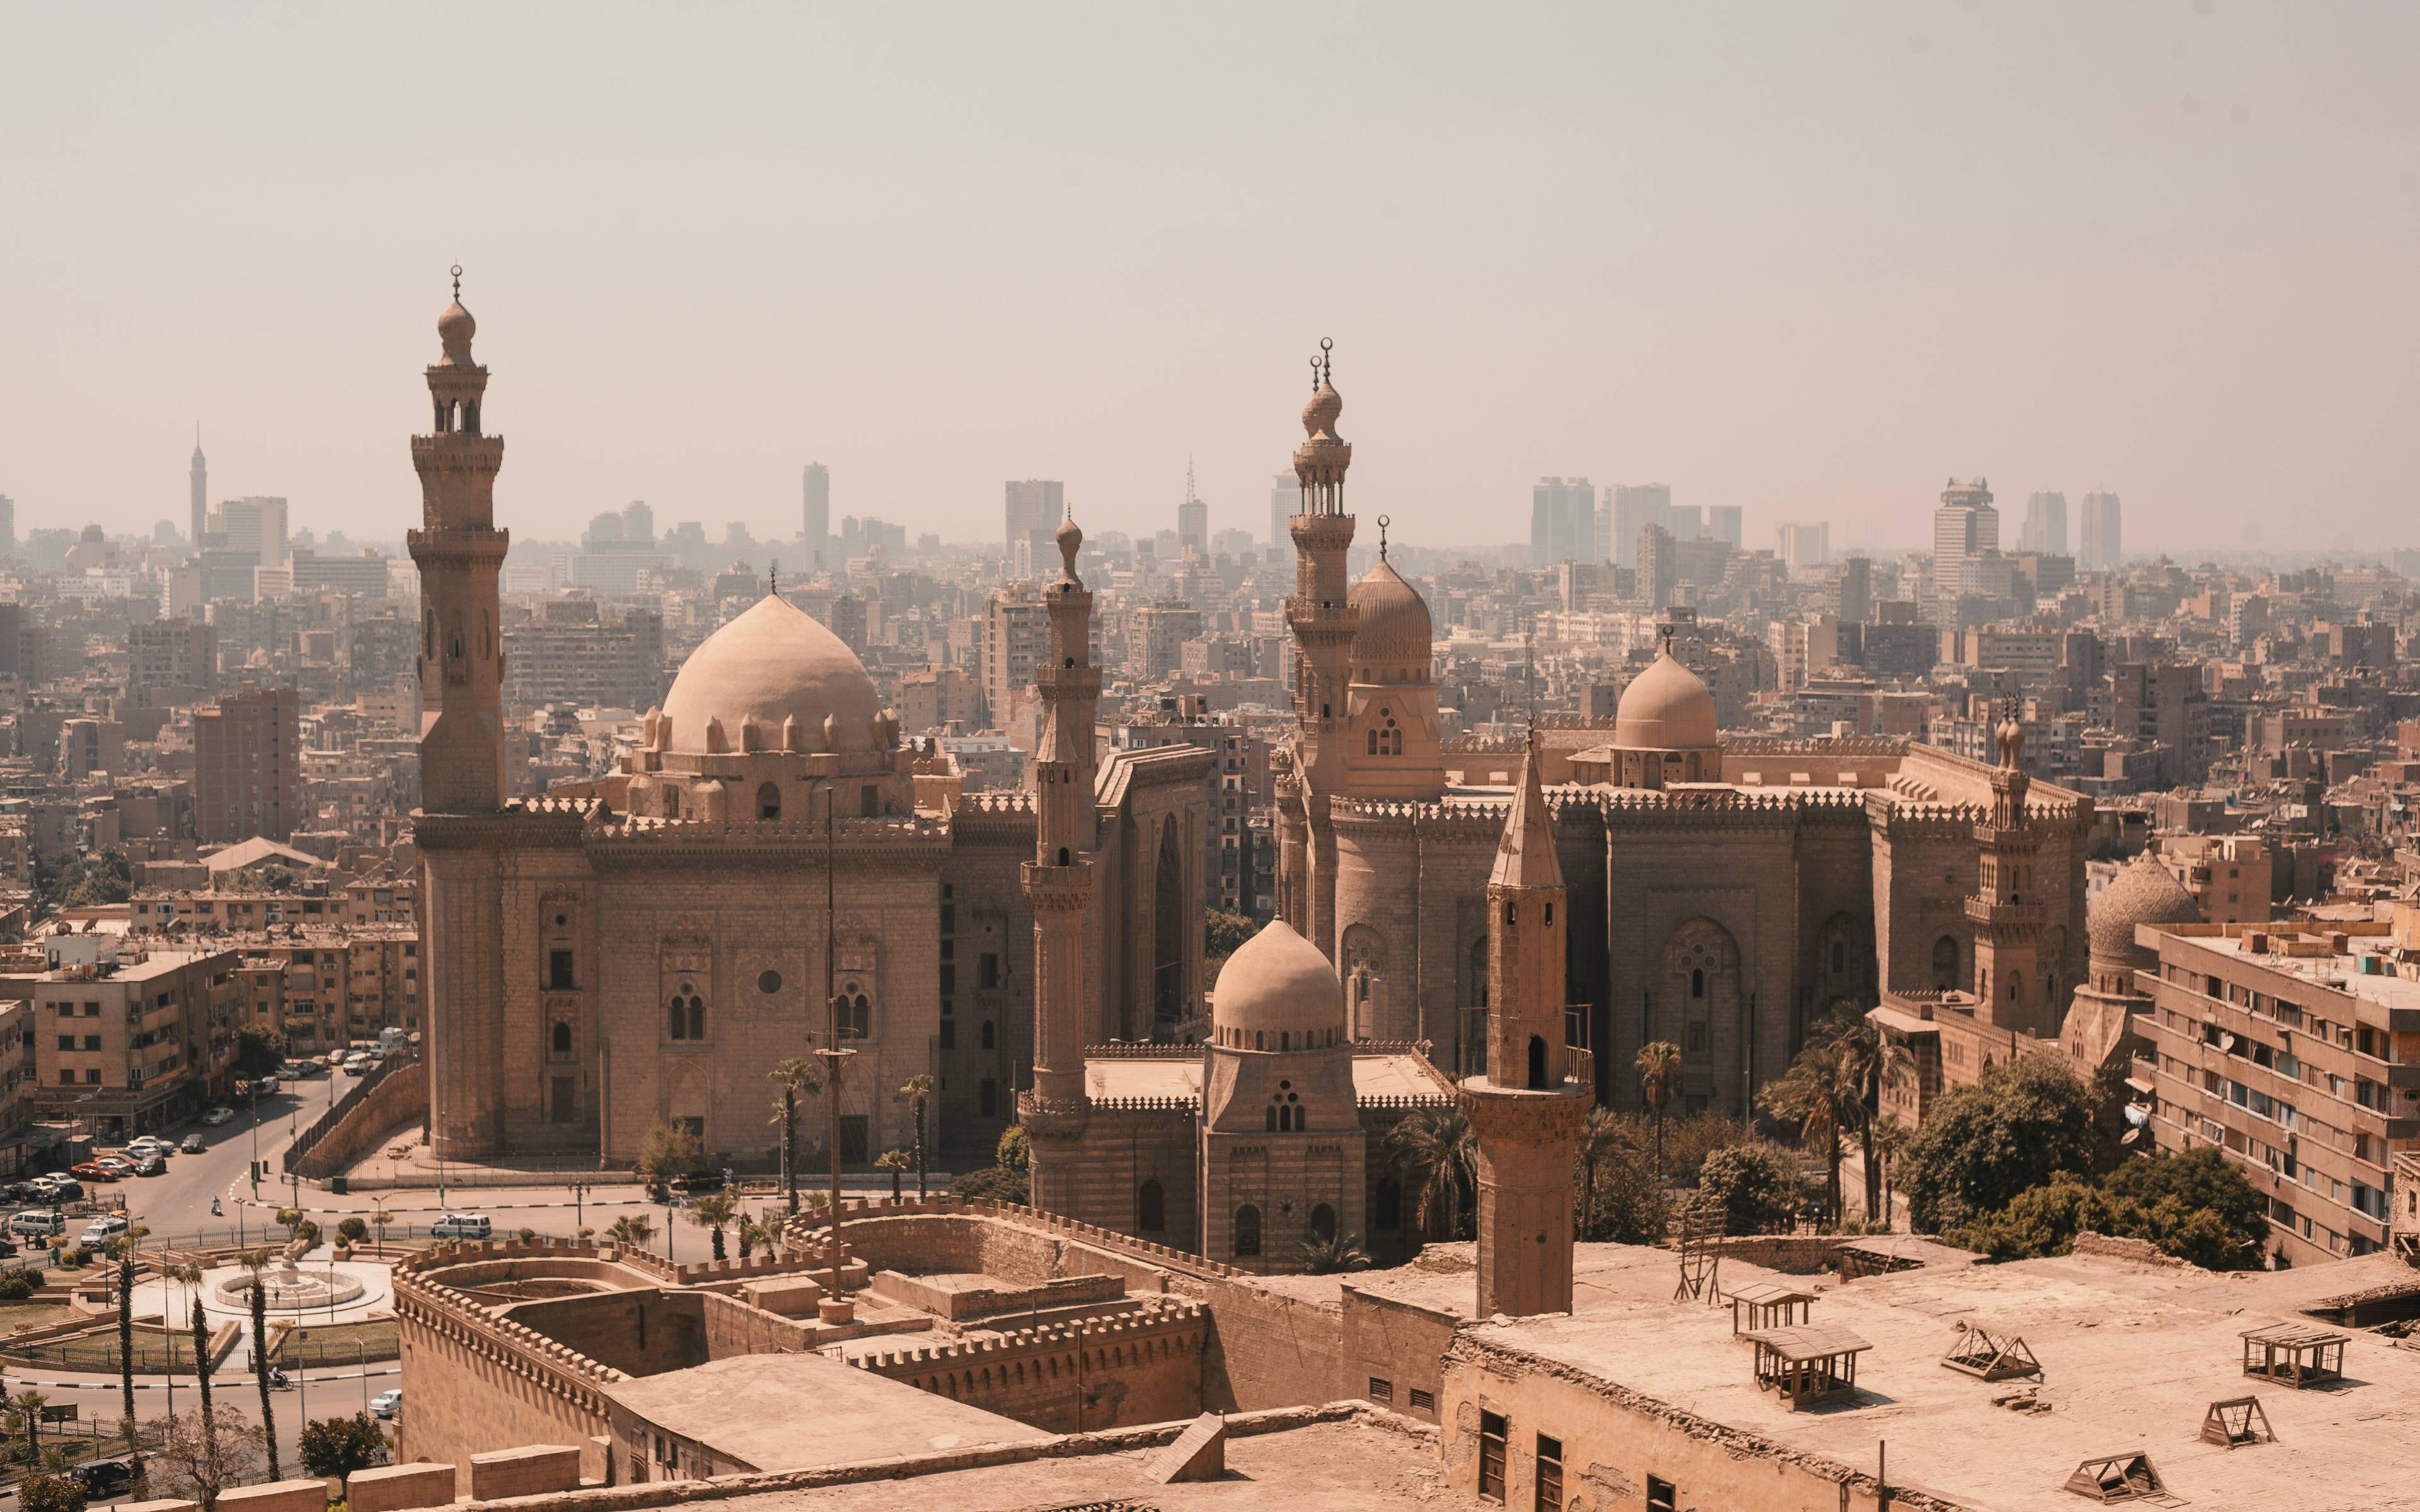 Rundgang durch die Altstadt von Kairo, lokales Essen und Rundgang